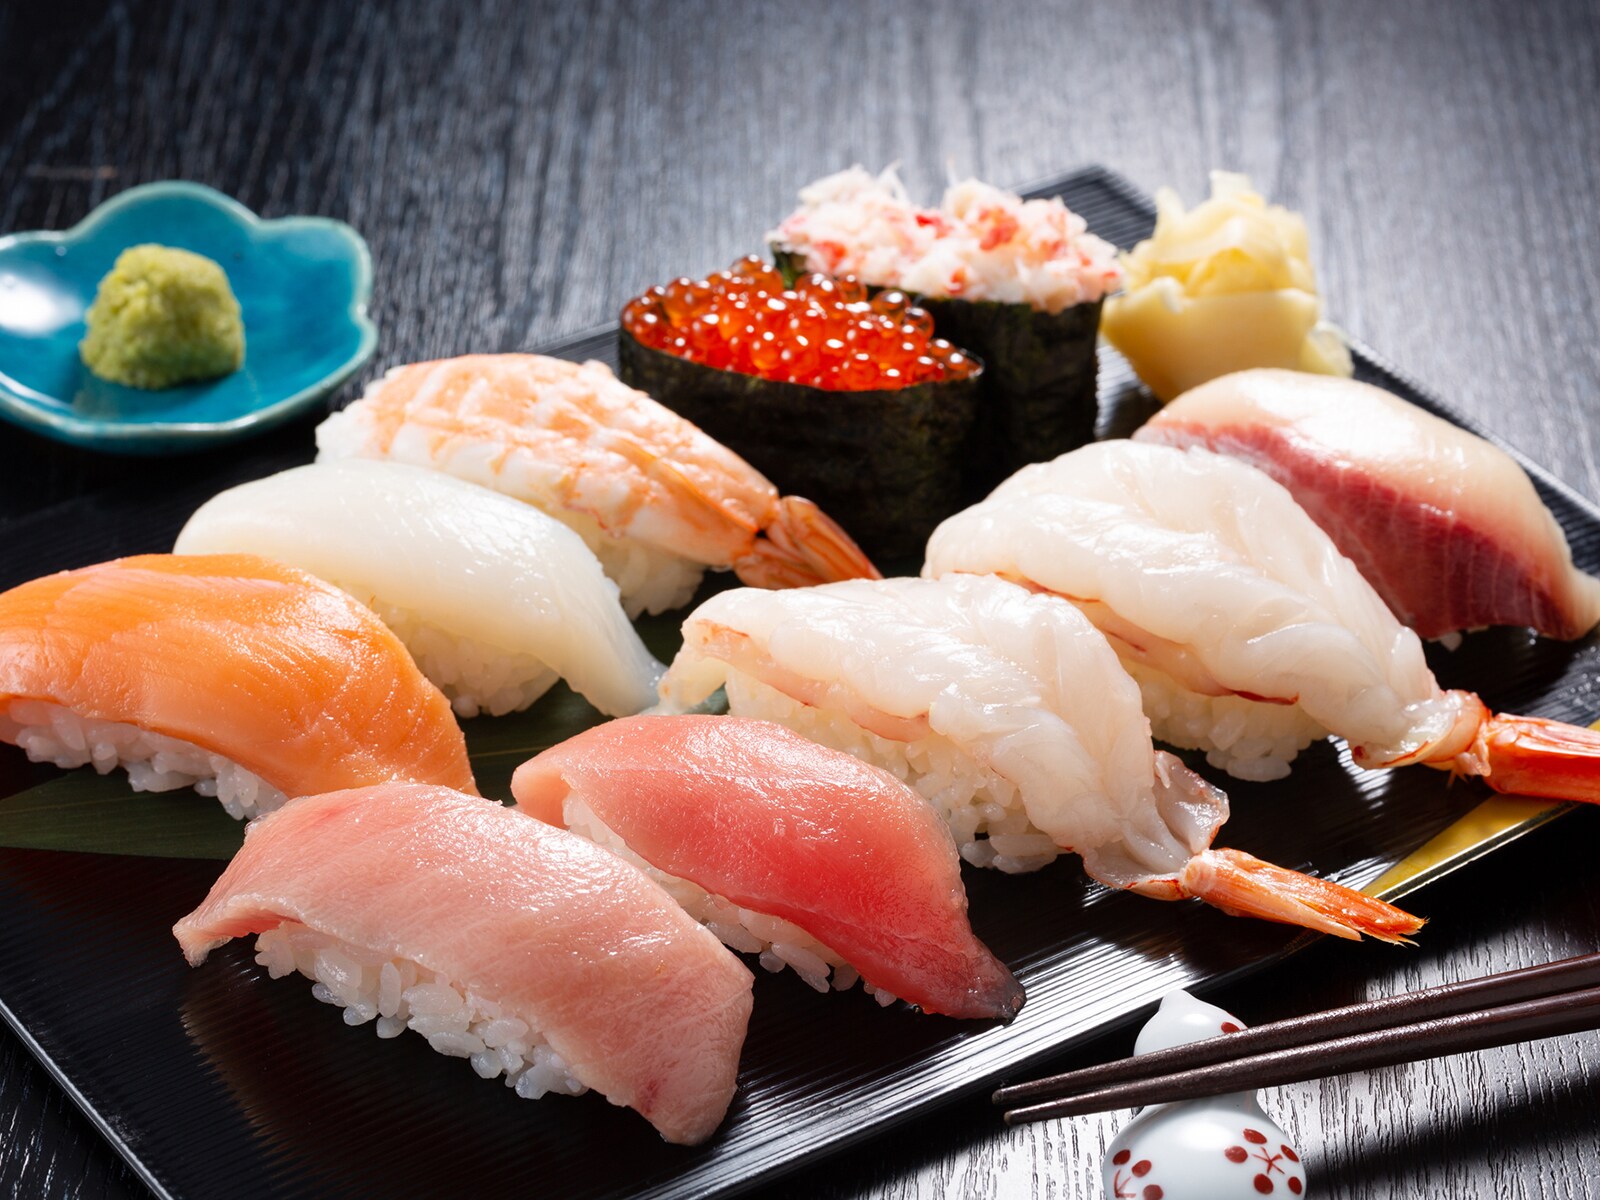 「寿司」がおいしいと思う東京の市区町村ランキング